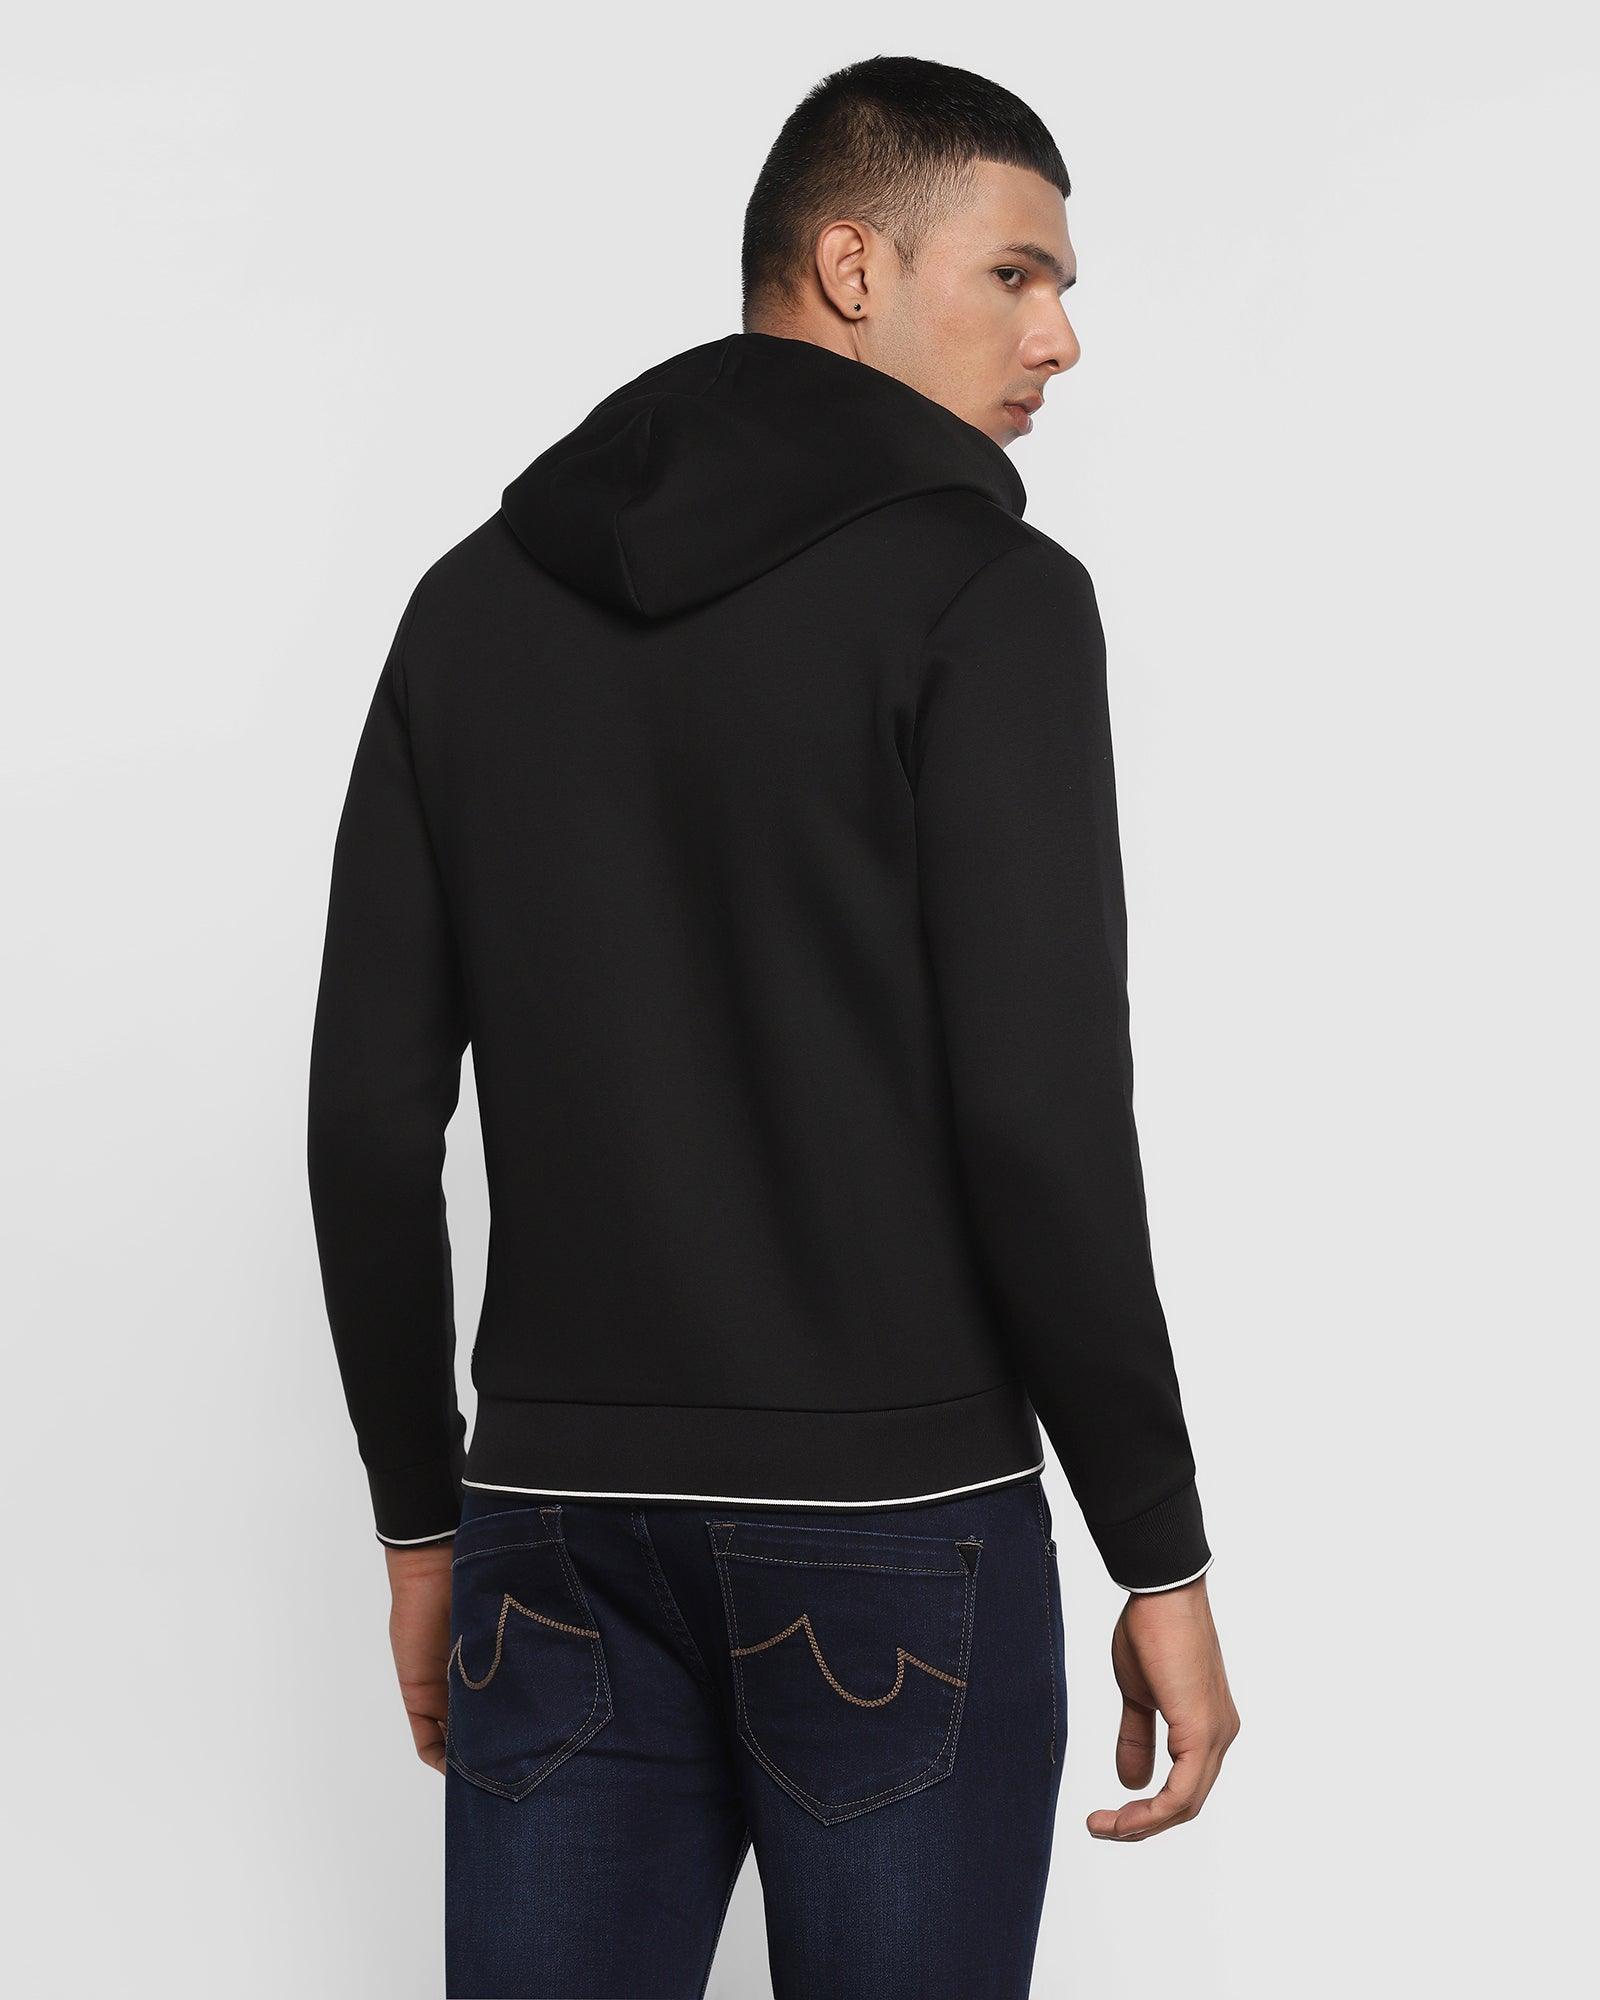 Hoodie Black Solid Sweatshirt - Morgan